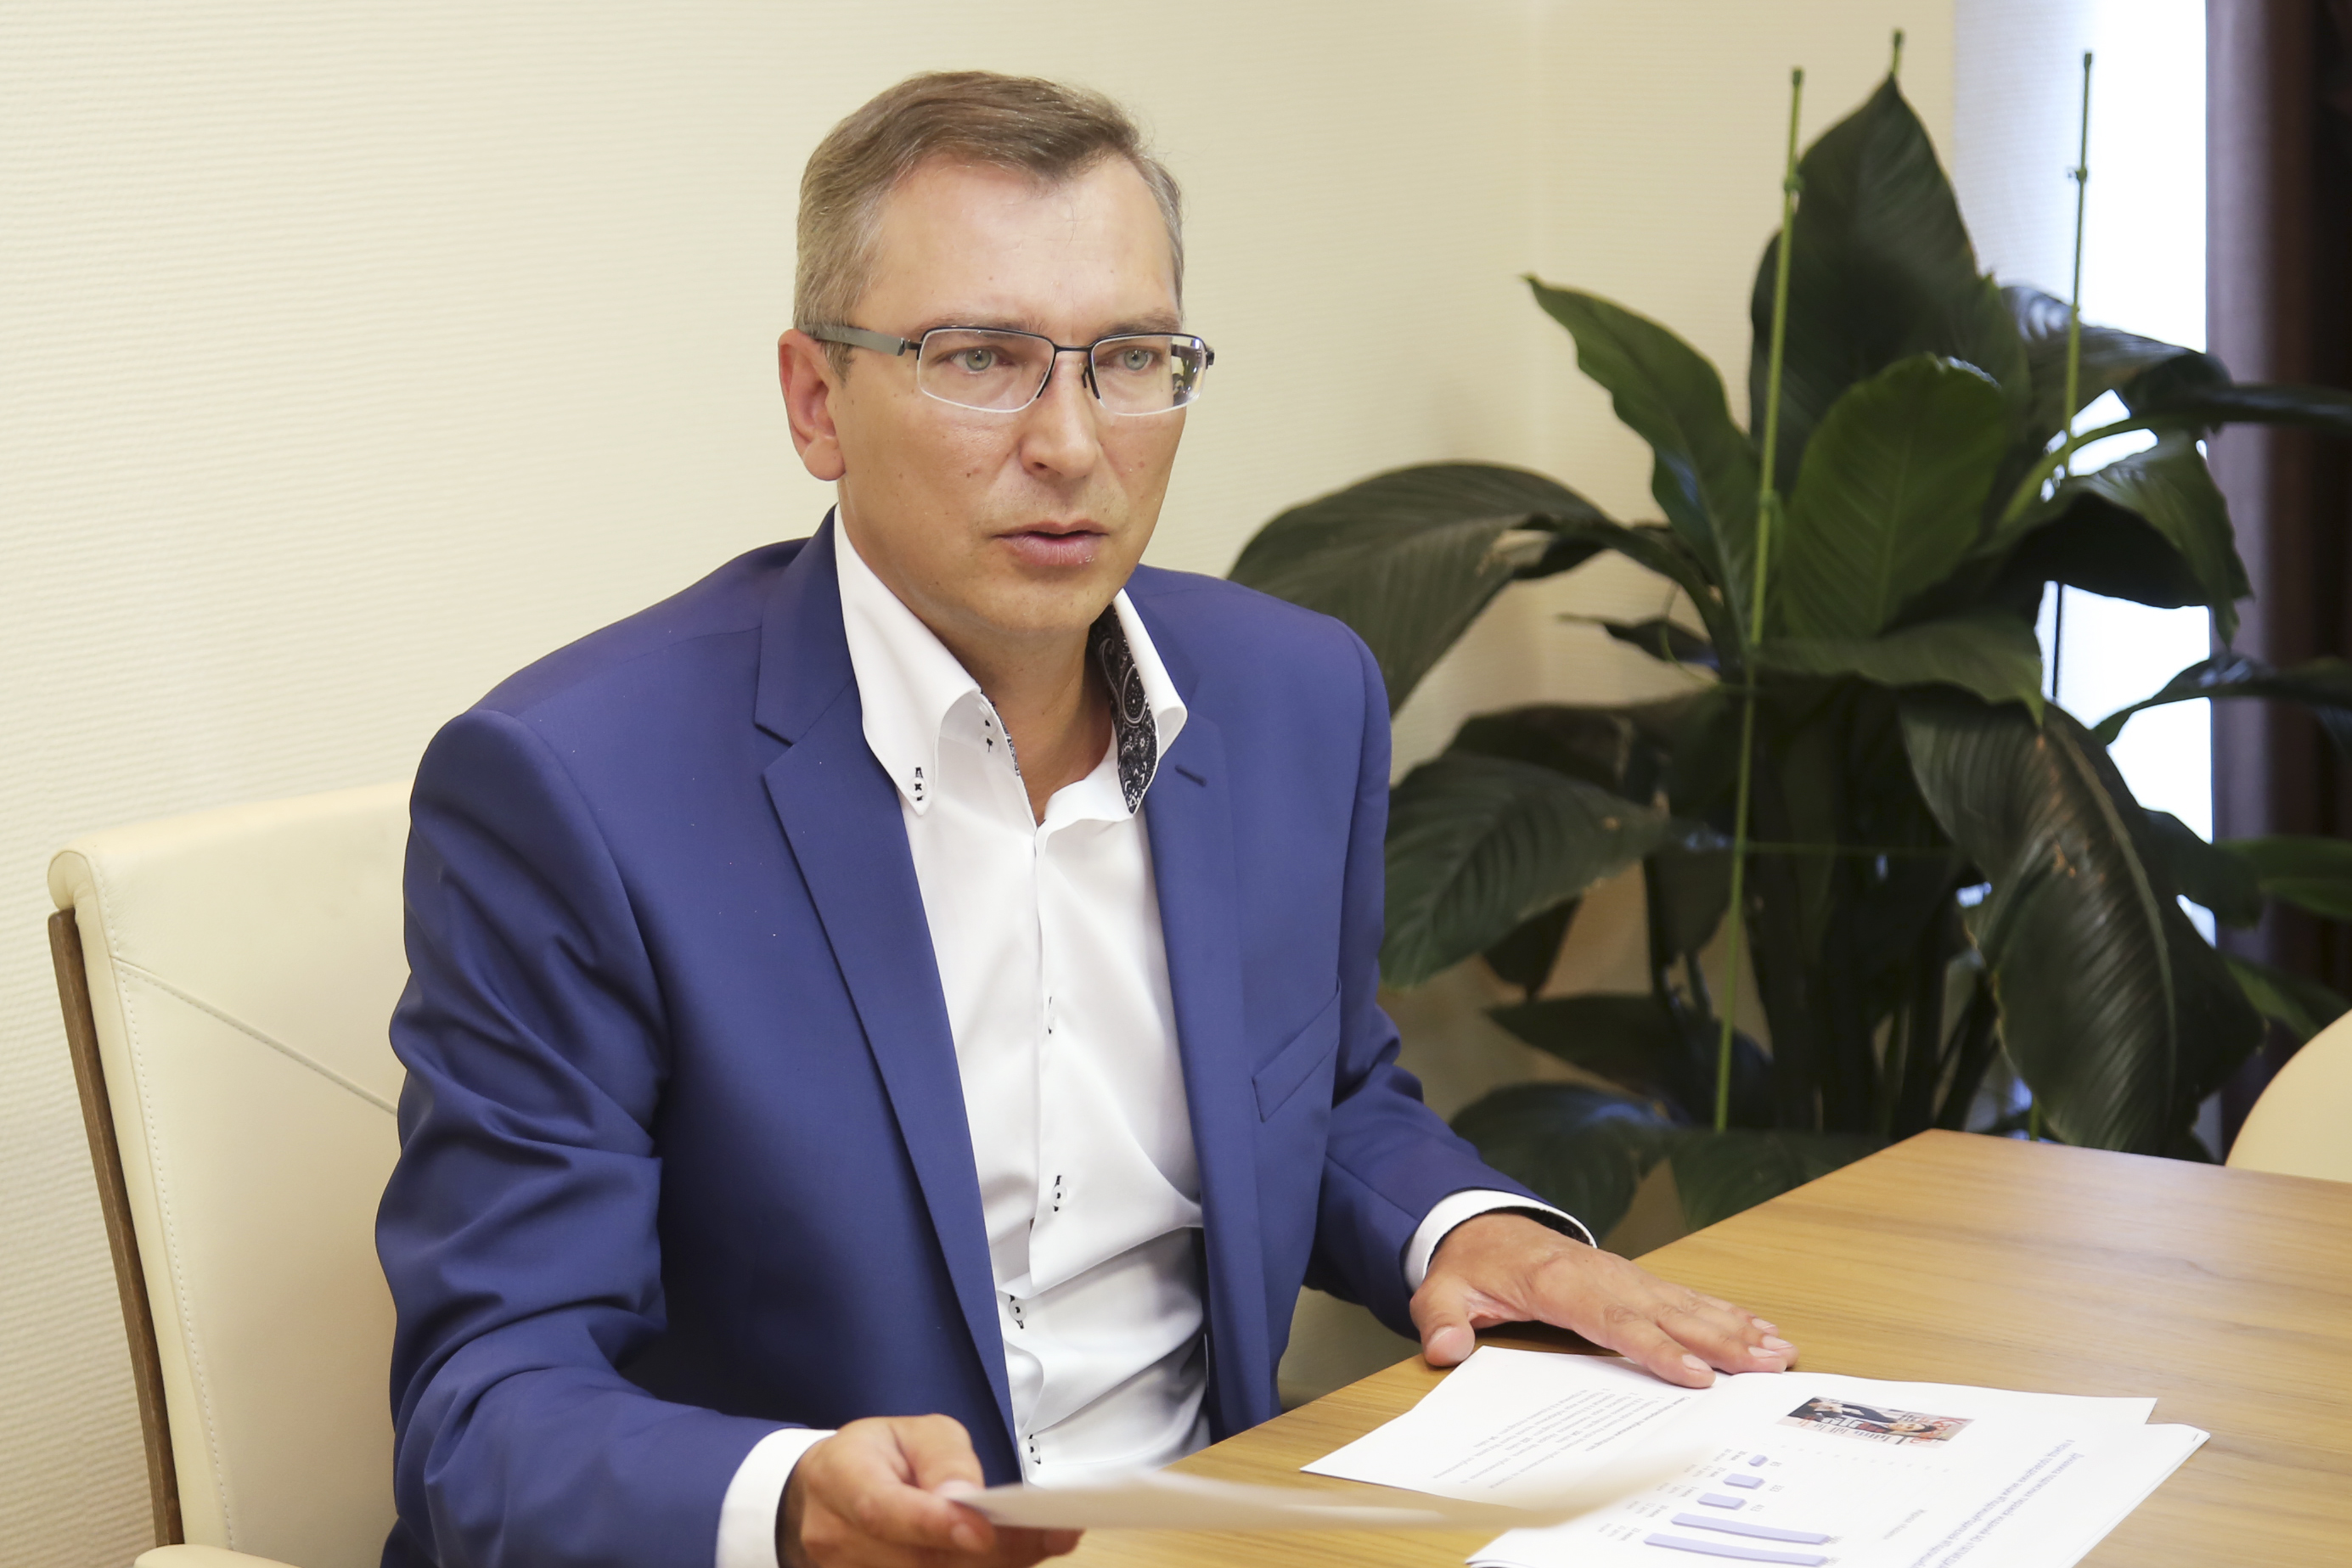 Андрей Кузьмин: Распространению прессы помогут законодательные меры